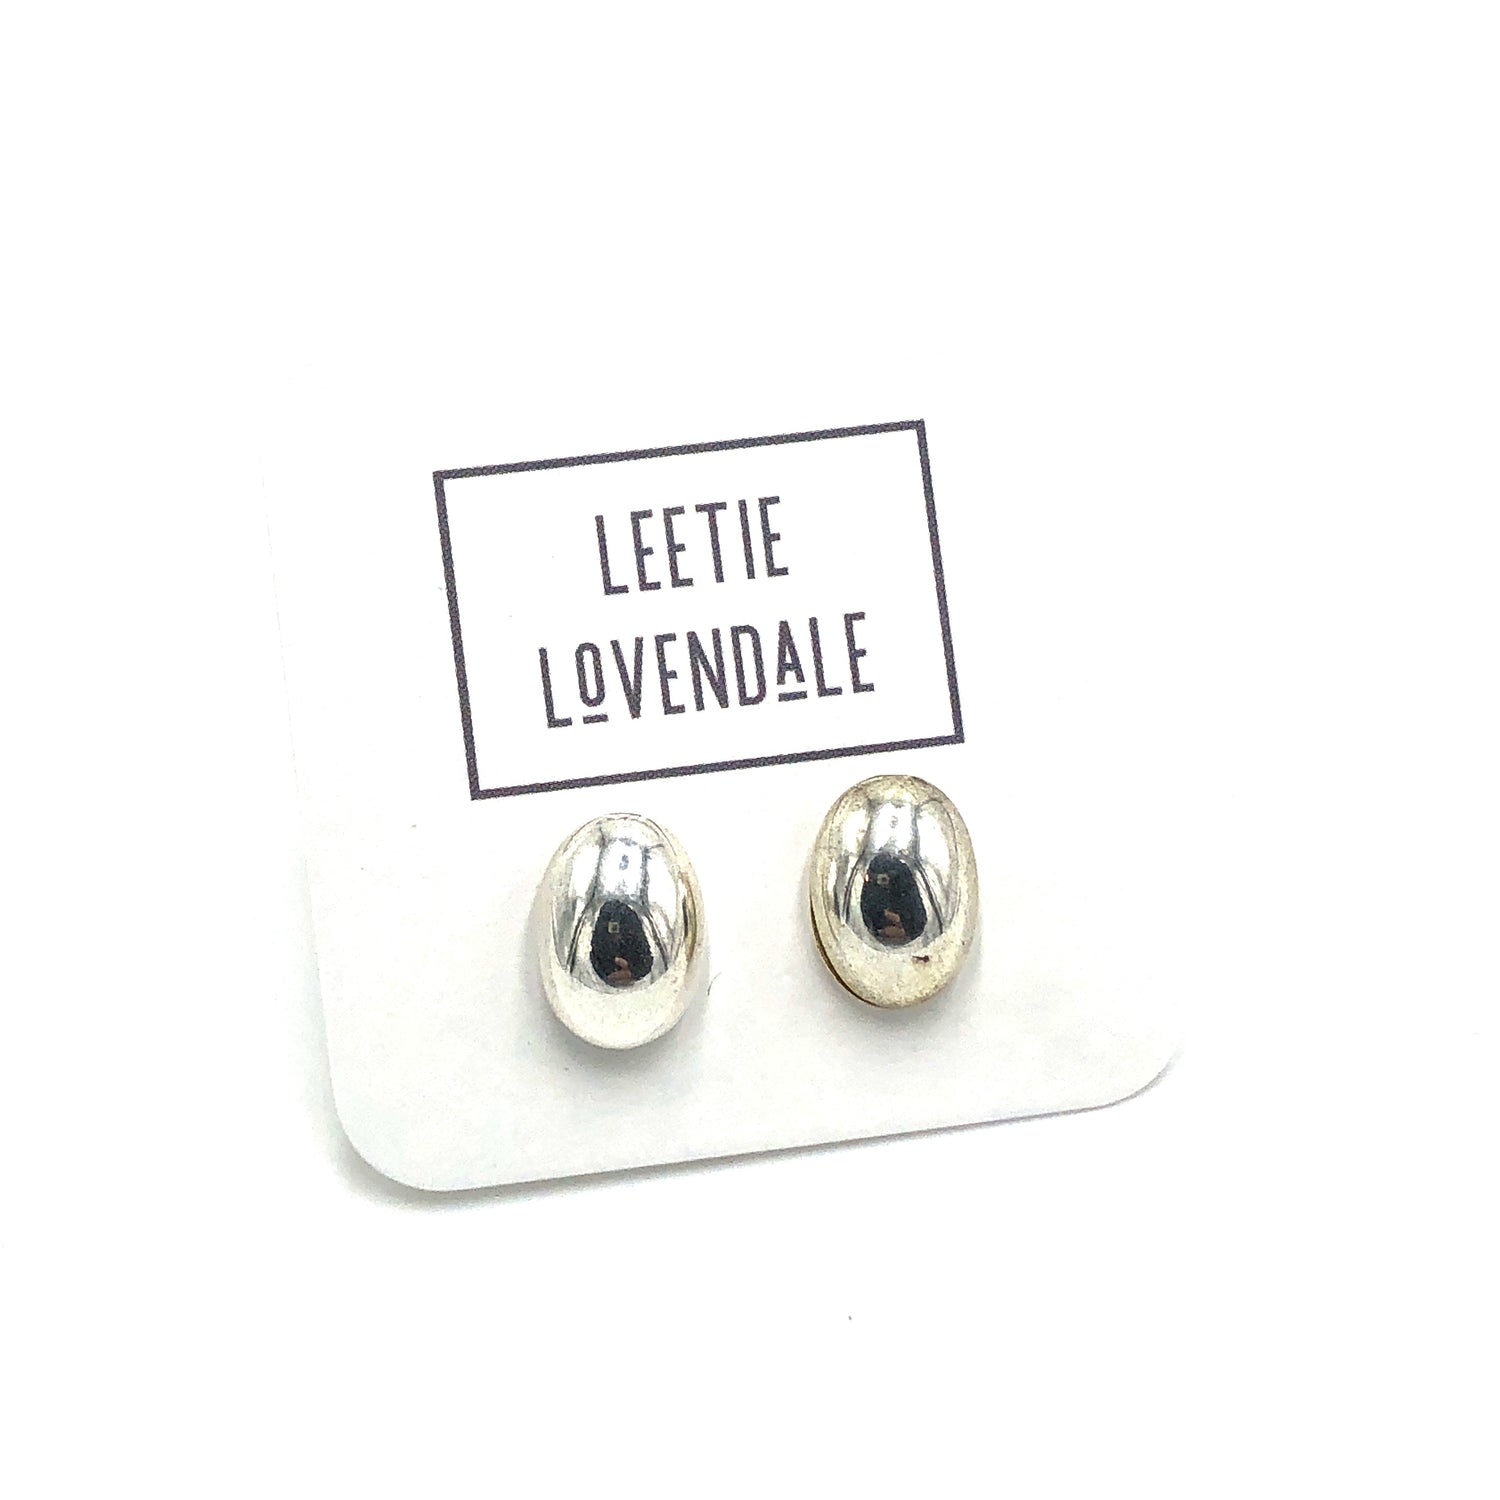 Silver Petite Oval Stud Earrings